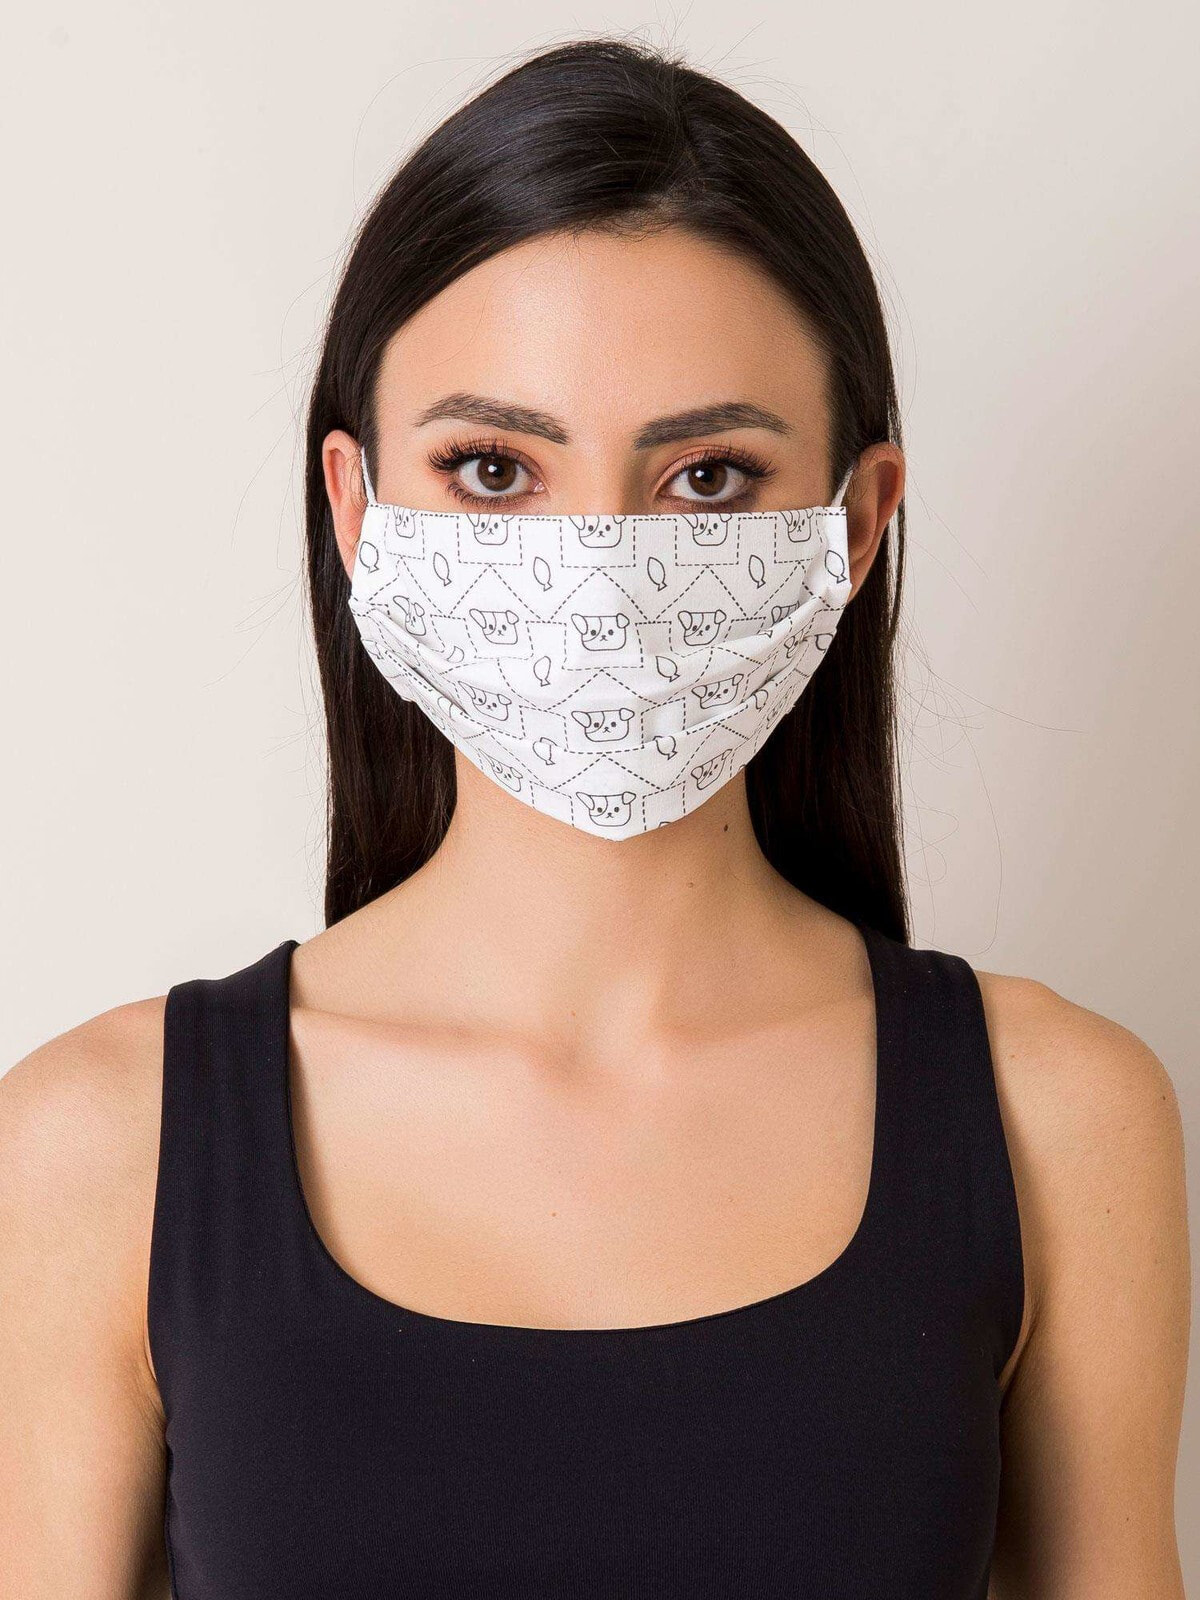 Защитная маска-KW-MO-JK104-бело-черный маски V38096997Цвет: Черно-белый  купить по выгодной цене в интернет-магазине market.litemf.com с доставкой